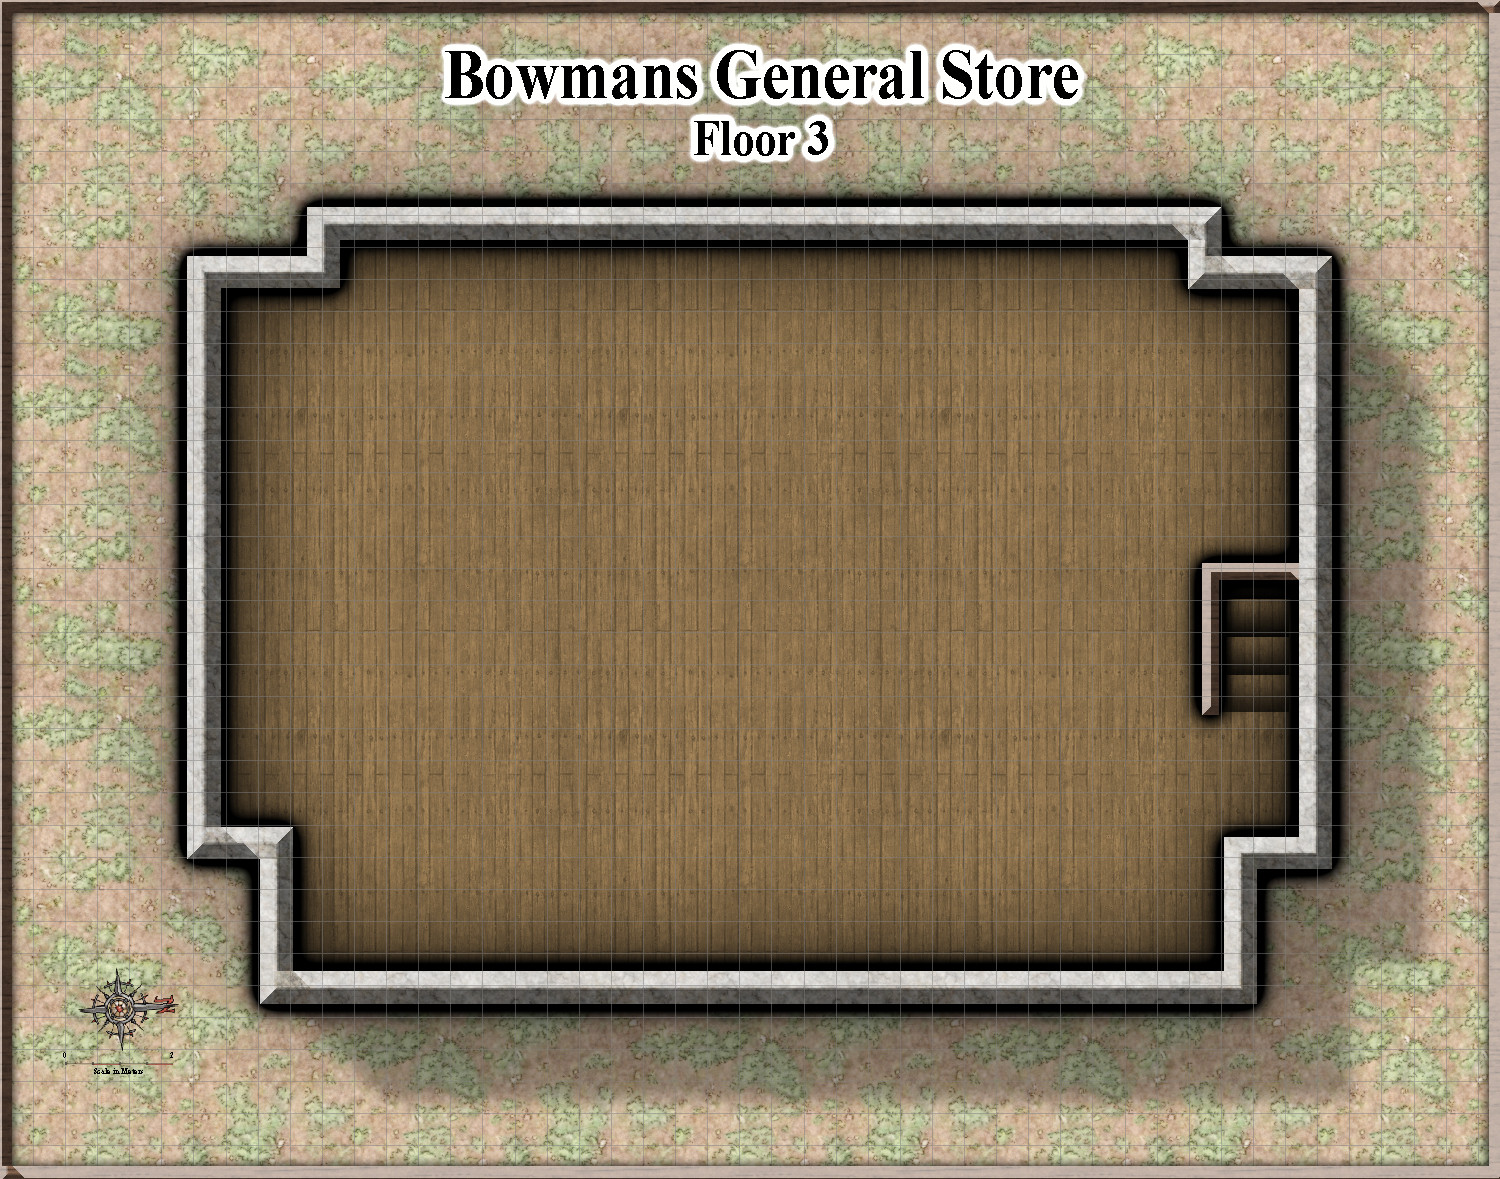 Bowmans General Store_Floor 3.JPG